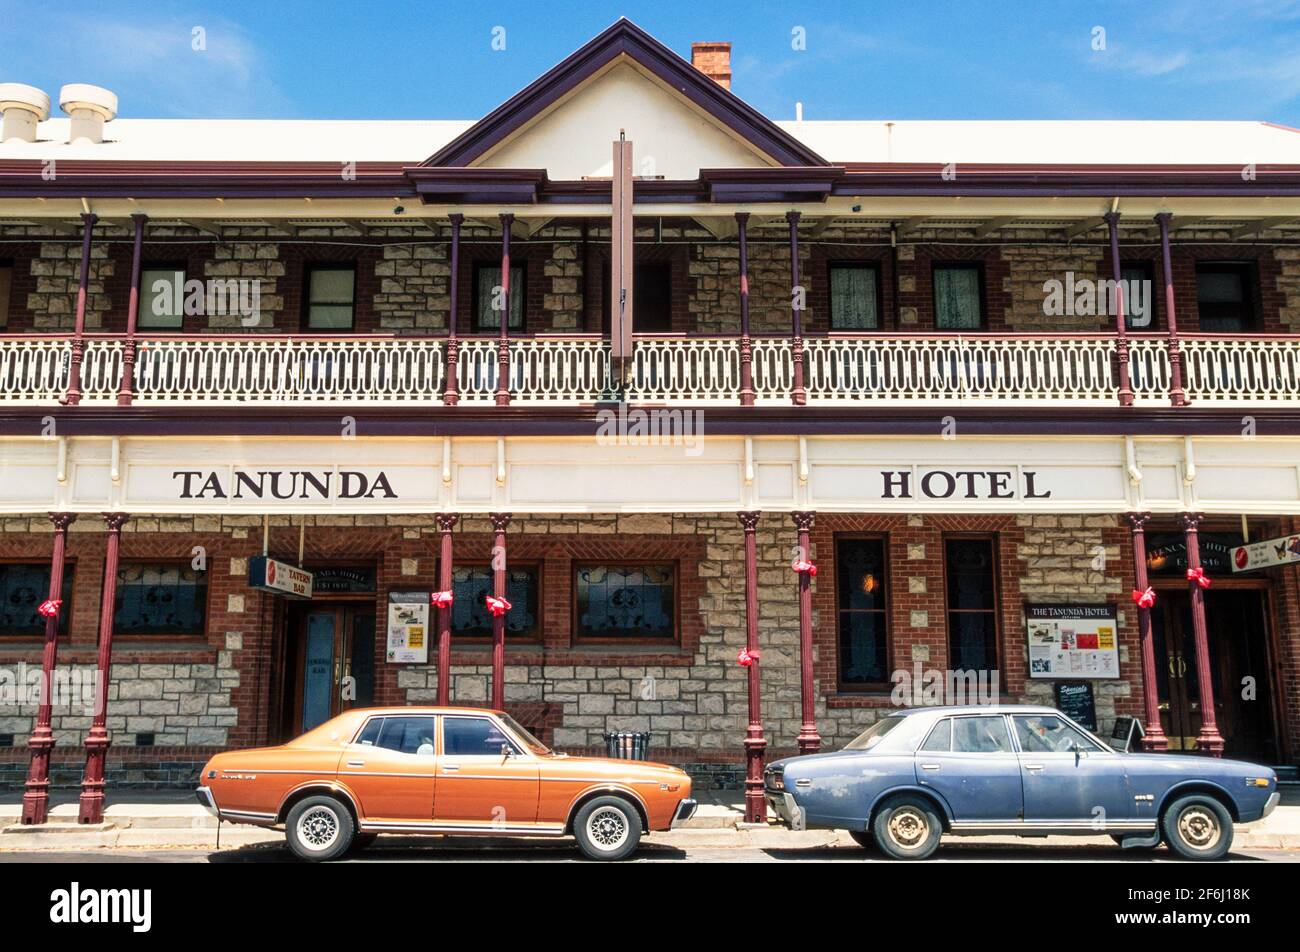 2001 Tanunda - zwei Autos der 70er Jahre vor dem Tanunda Hotel, Tanunda, Barossa Valley, South Australia, Australien. Tanunda ist eine Stadt in der Region Barossa Valley in Südaustralien, 70 Kilometer nordöstlich der Landeshauptstadt Adelaide. Tanunda ist ein Wort der Aborigines für Wasserloch.das Barossa Valley ist eines der besten Weinanbaugebiete Australiens und die Stadt ist von Weinbergen umgeben. Dies ist eines der frühesten Gebäude der Stadt. Ein ehemaliges, feines Hotel, das 1846 aus lokalem Stein erbaut wurde, hat sich im Laufe der Jahre verändert, mit einem zweiten Stock und einer englischen Eisenhütte Veranda. Stockfoto